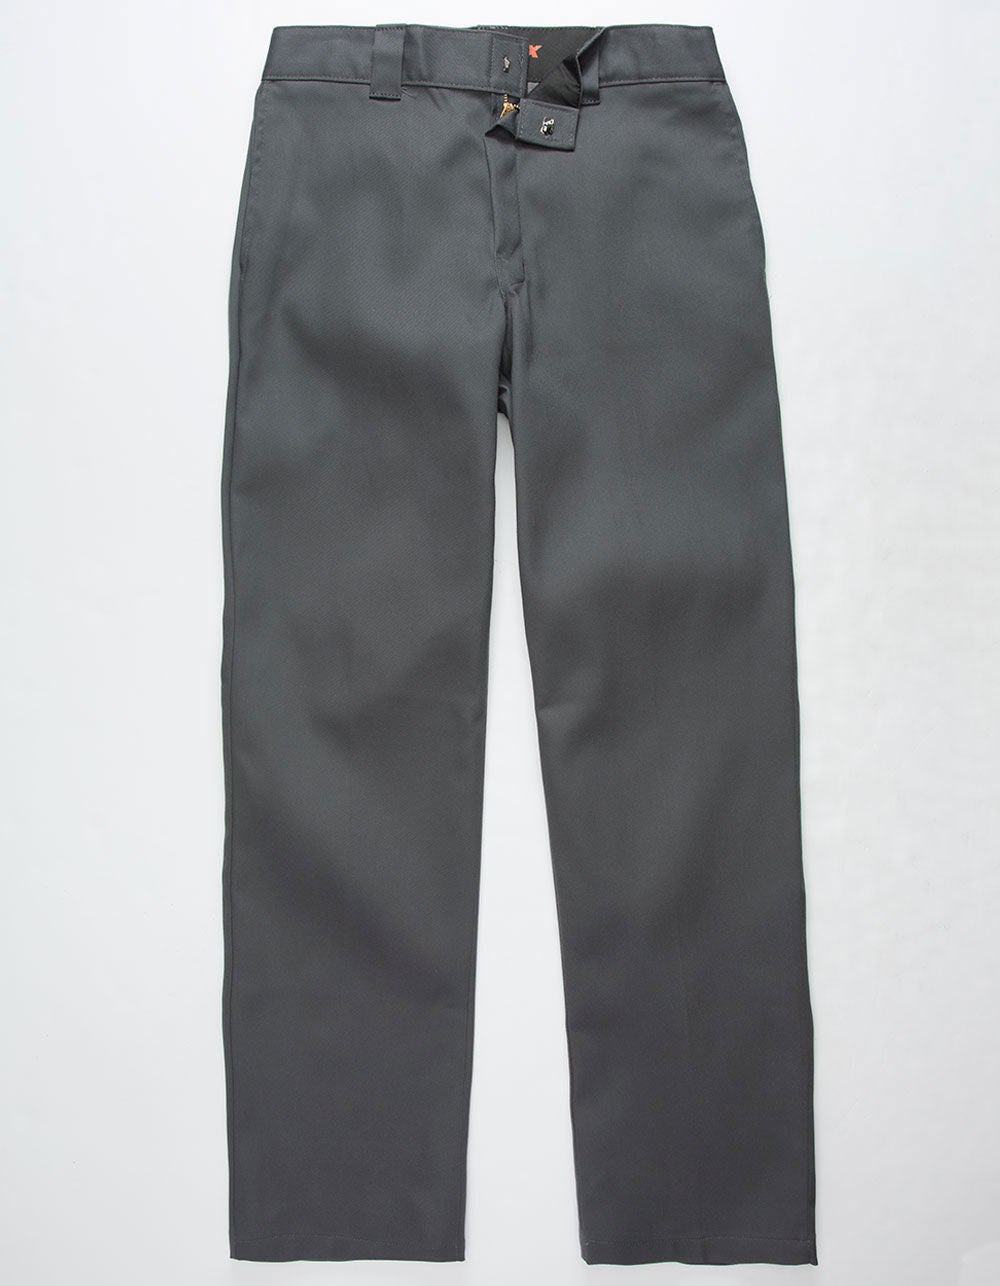 Dickies Pants 874 Original Fit Grey